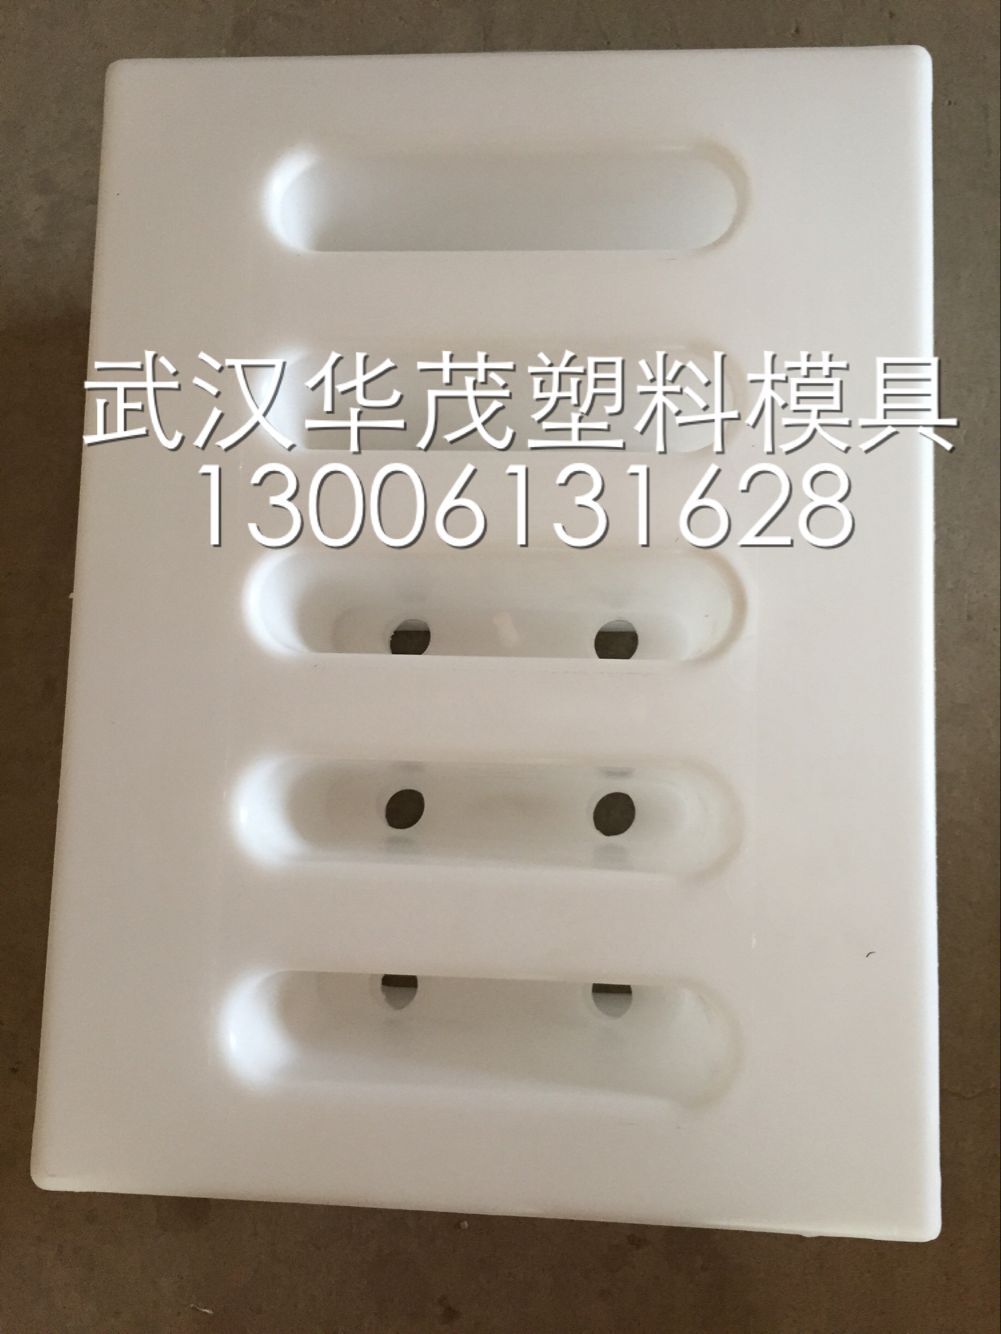 供应贵阳高速公路盖板塑料模具生产商-贵阳高速公路盖板塑料模具供货商图片